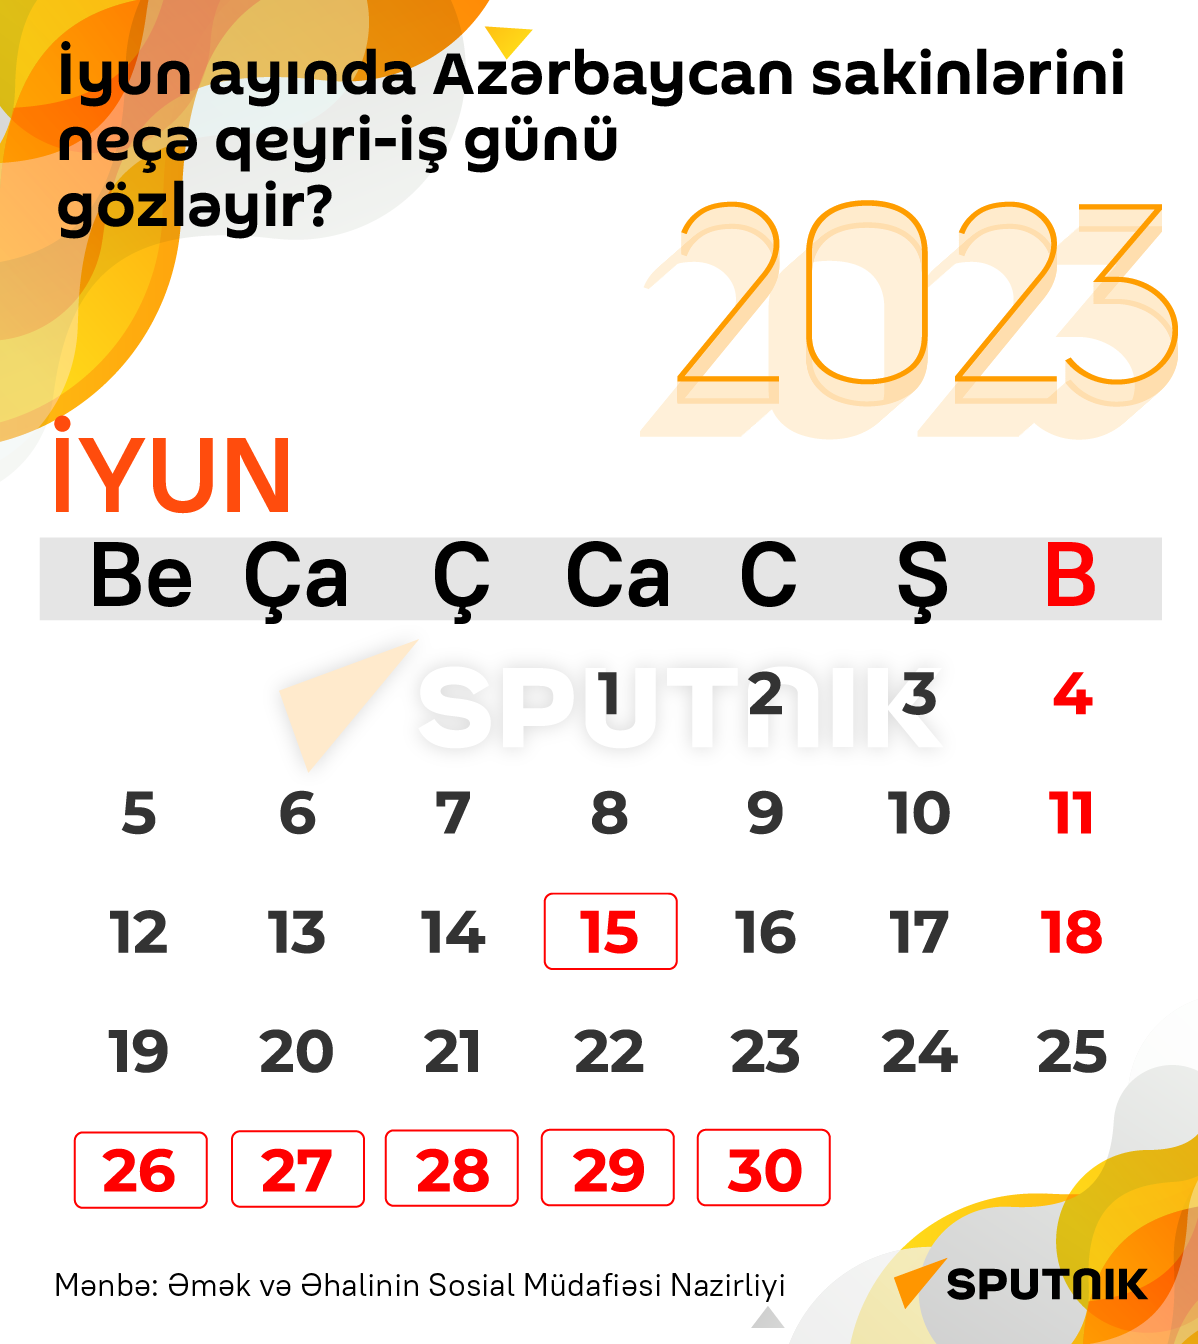 İyun ayında Azərbaycan əhalisi üçün qeyriiş günləri 30.05.2023